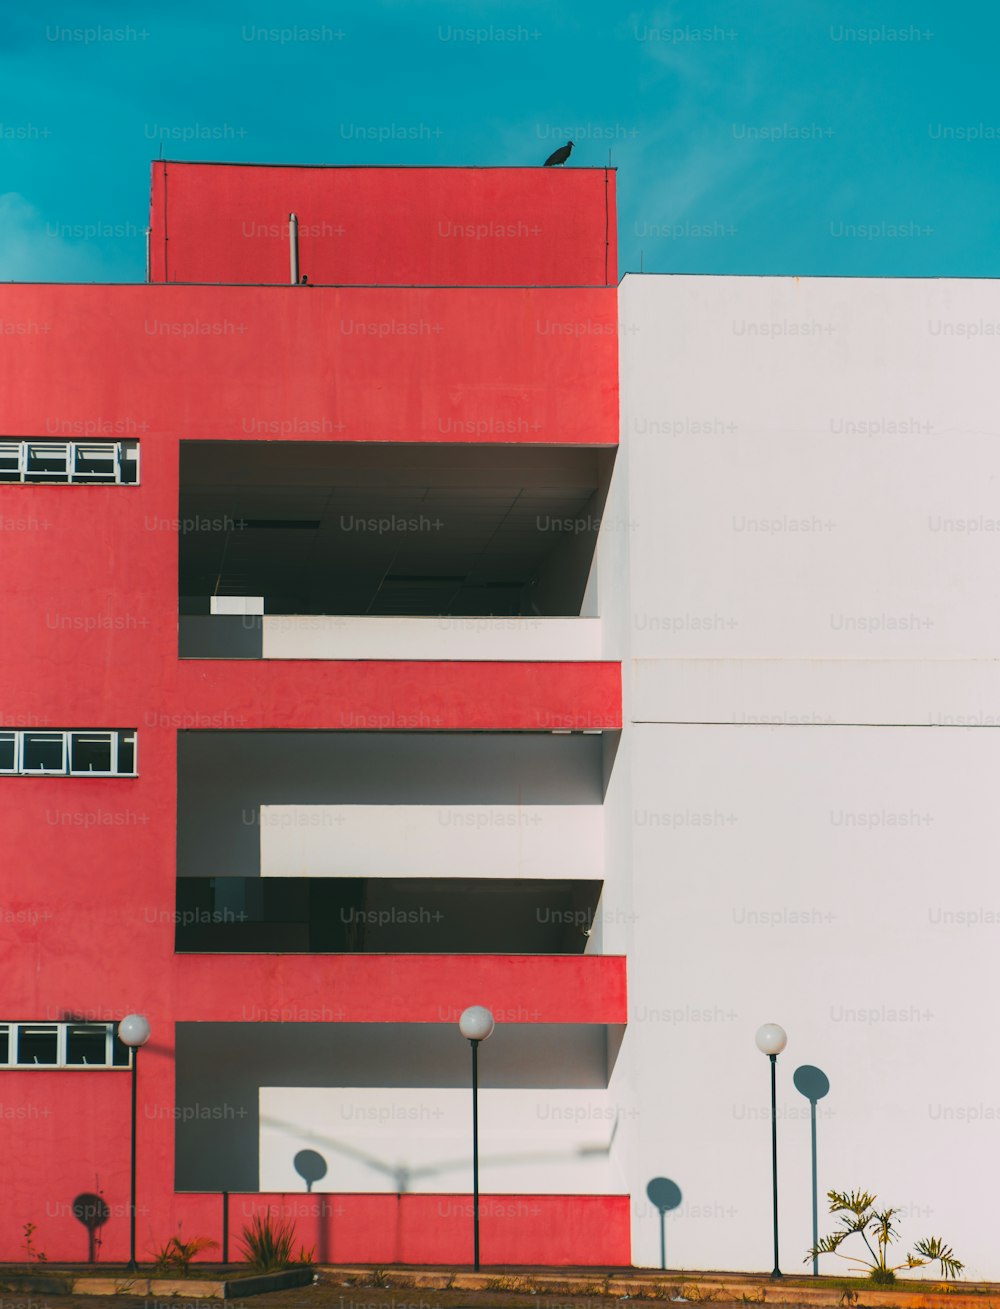 La fachada del edificio moderno se divide en dos: una parte de la fachada es roja y tiene balcones y ventanas, otra parte es blanca; linternas debajo, un enorme pájaro en el techo, geometría minimalista